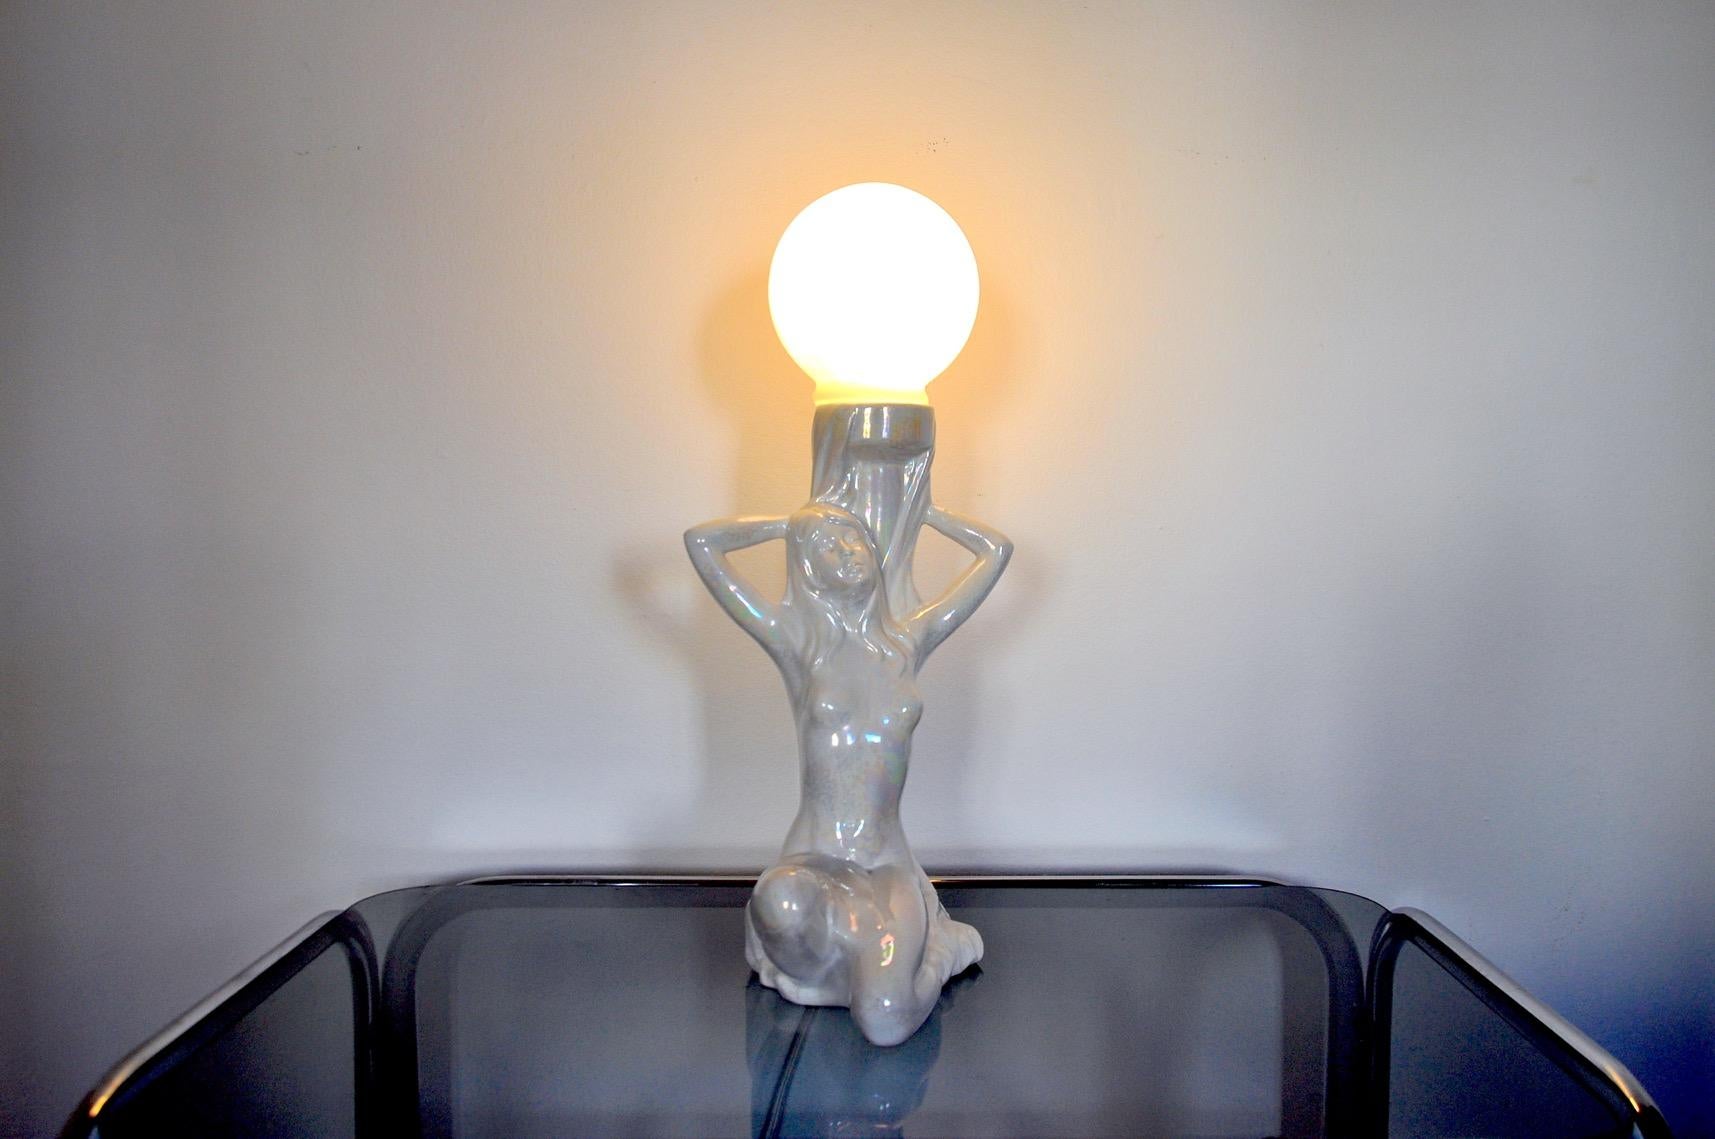 Très jolie lampe de table représentant une femme nue datant des années 70. La lampe est composée d'une sculpture en céramique noire et d'un globe en opaline blanche. Lampe qui apportera une véritable touche vintage et décorative à votre intérieur.